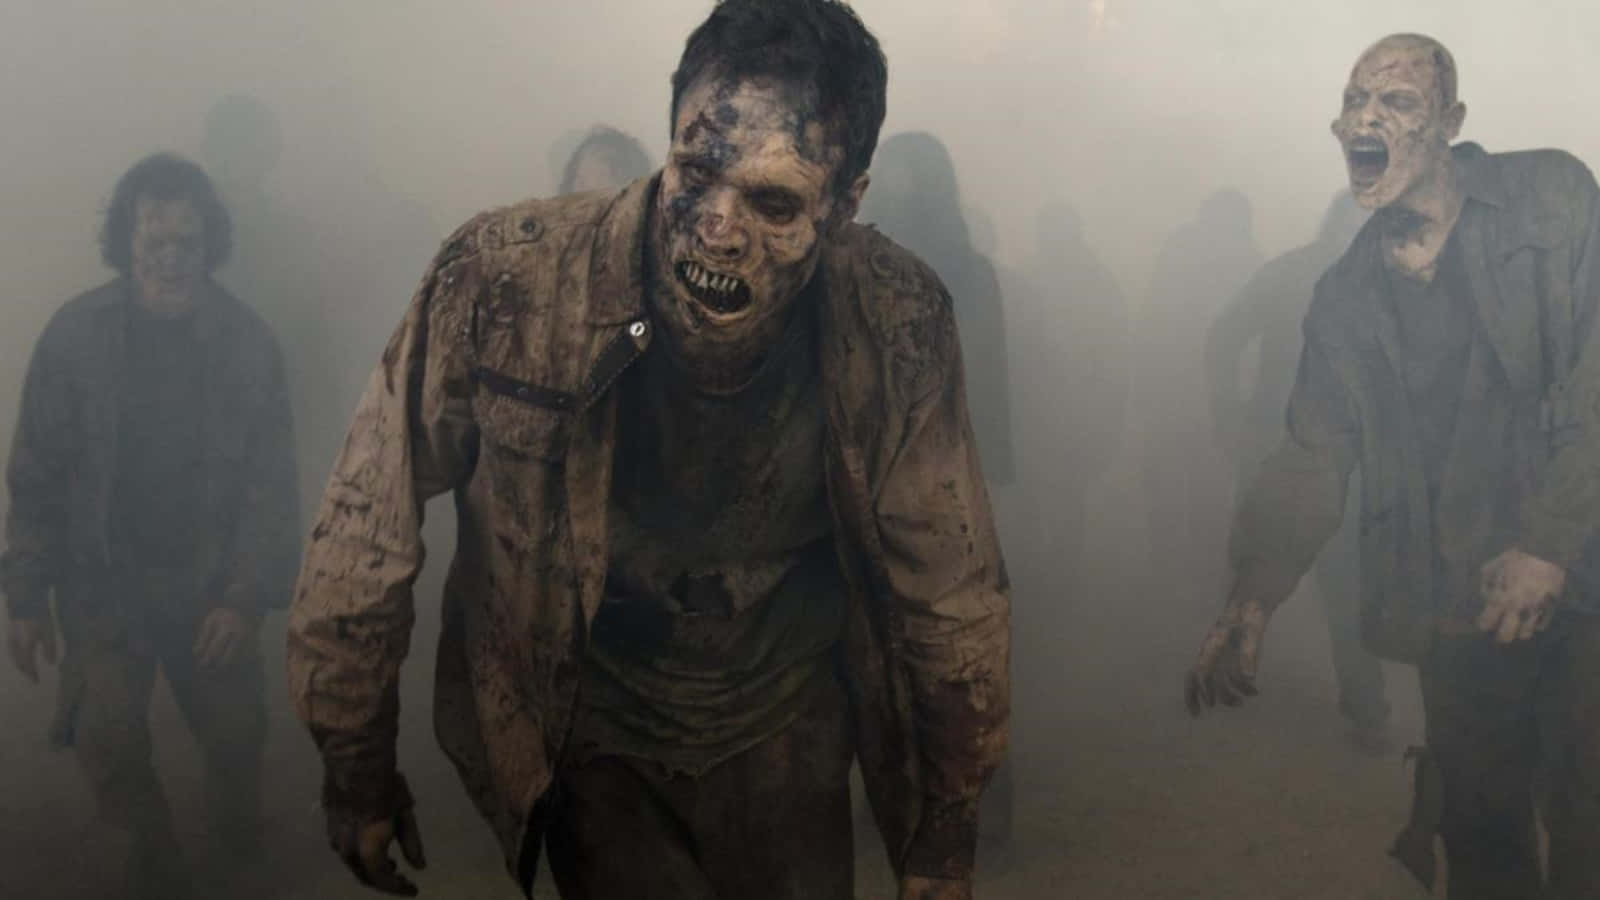 "Surviving the zombie apocalypse"